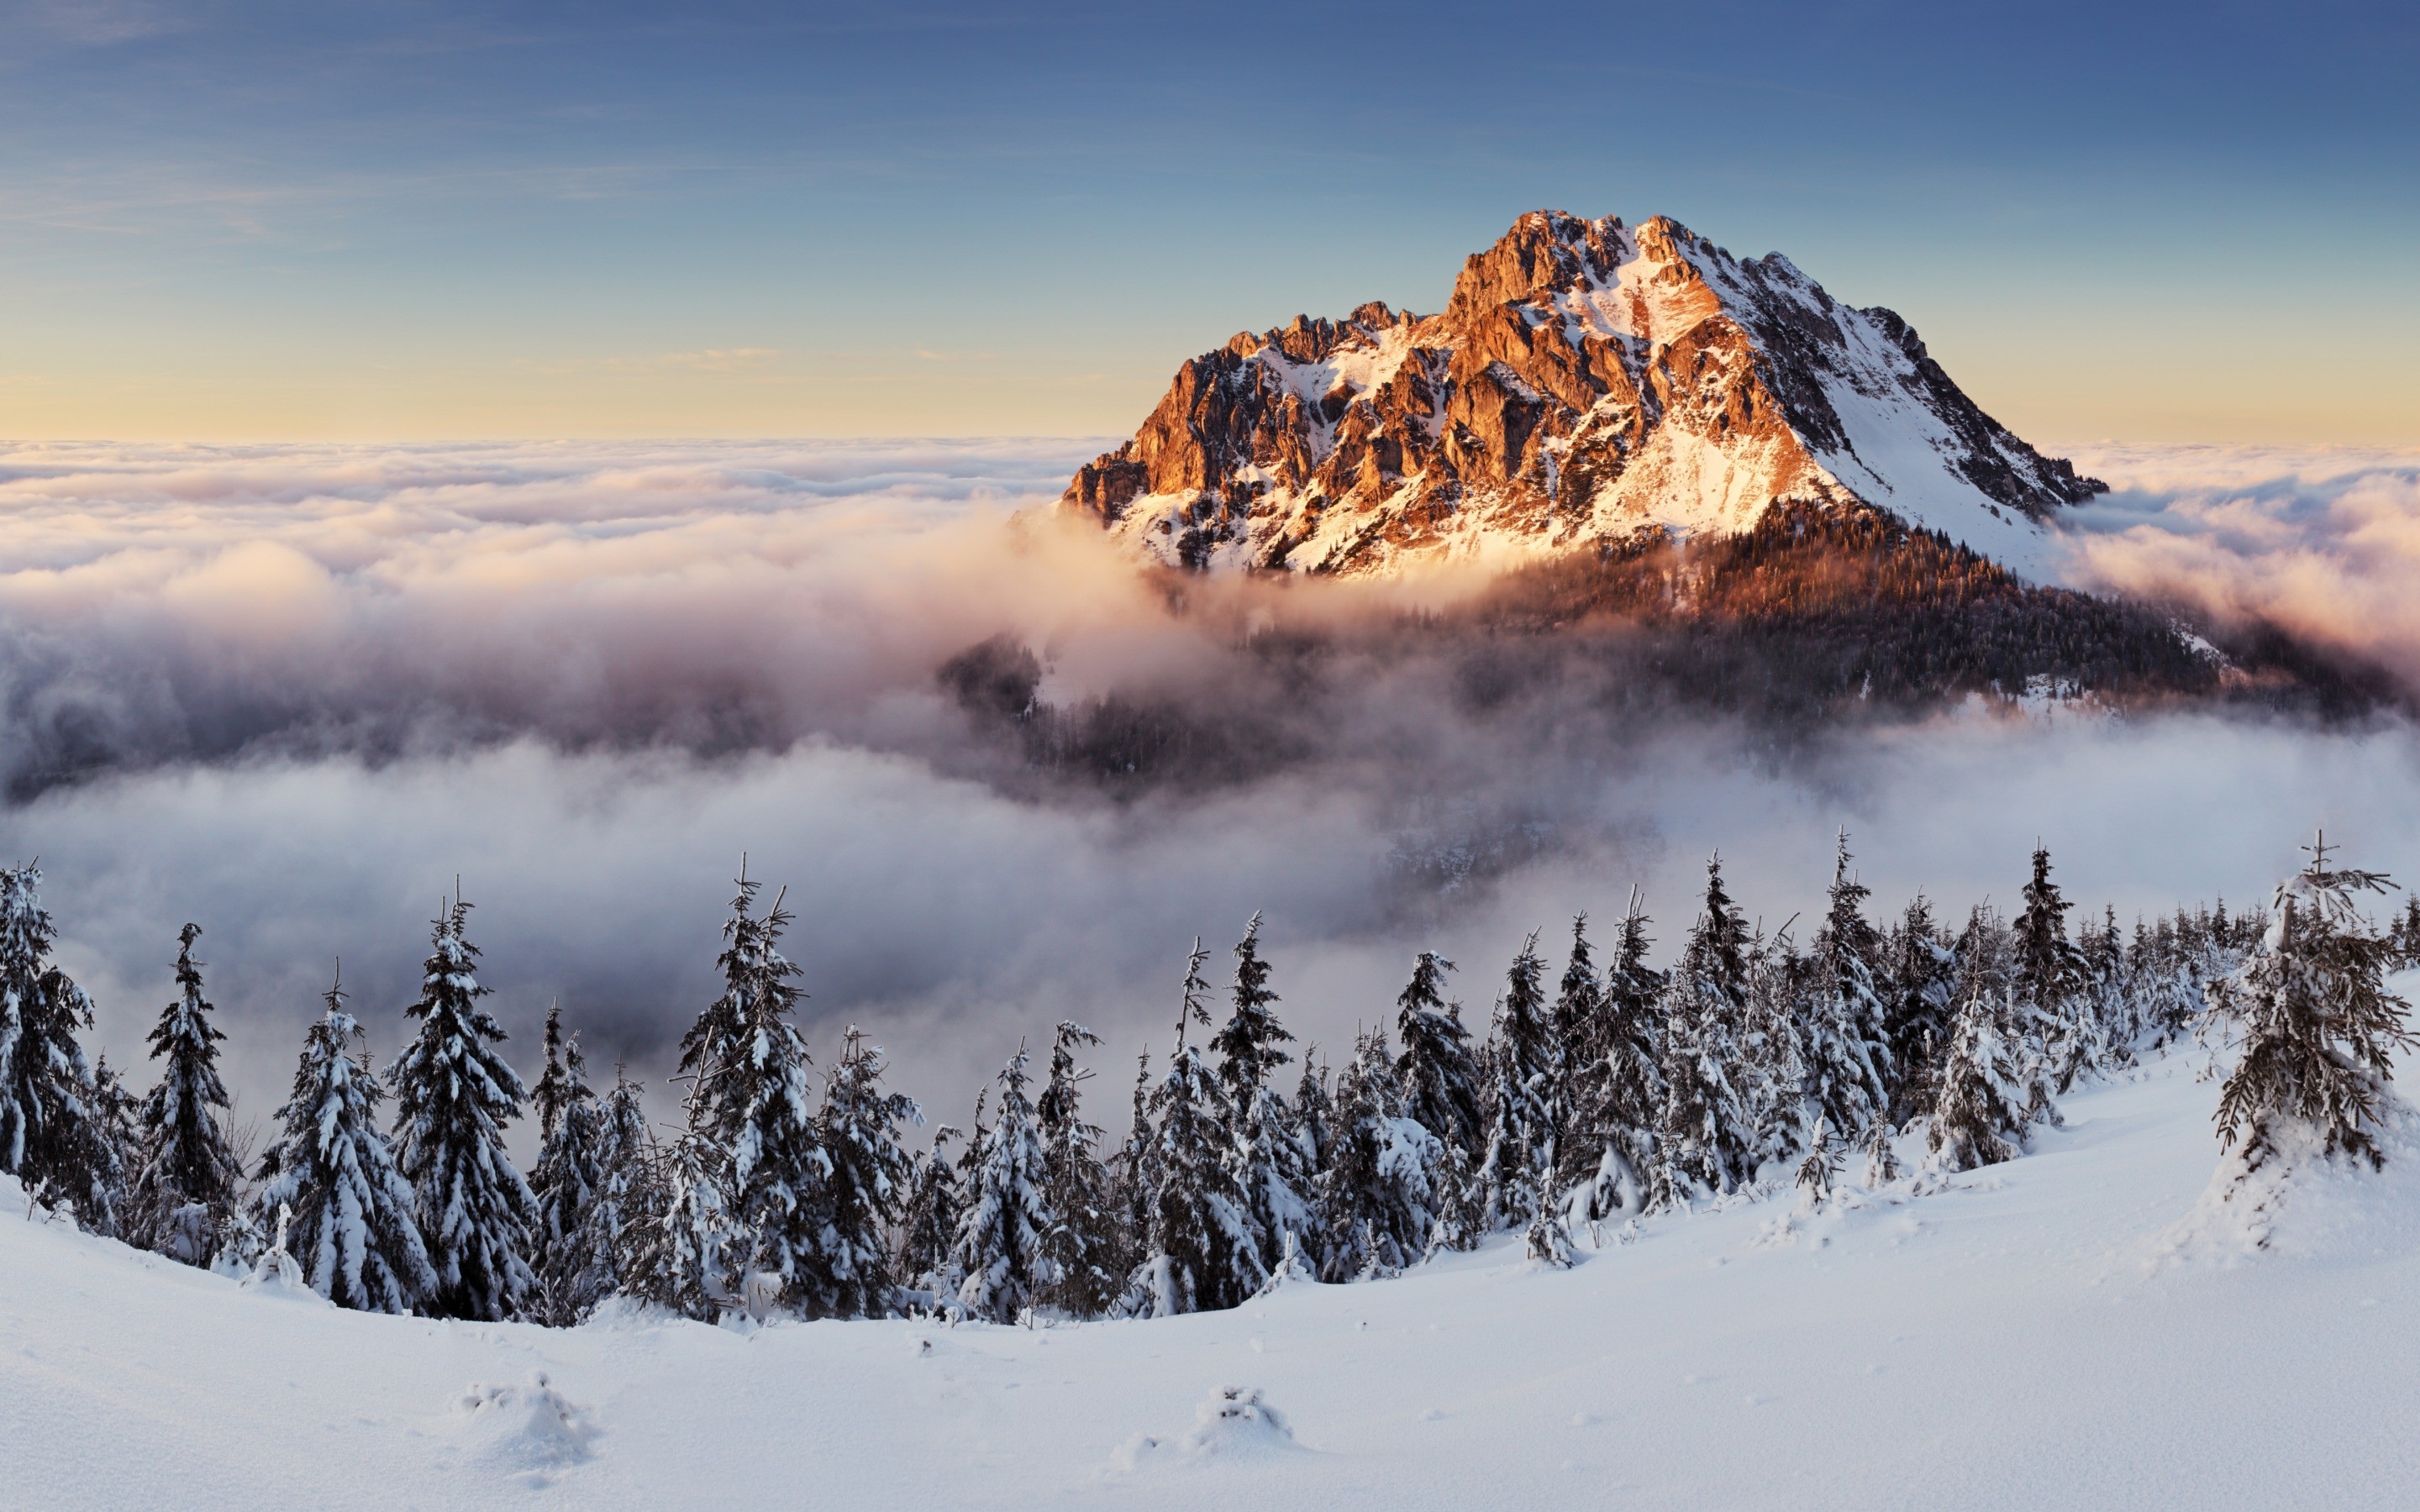 x1200分辨率下载,冬季景观雪壁纸,高清图片,壁纸,自然风景